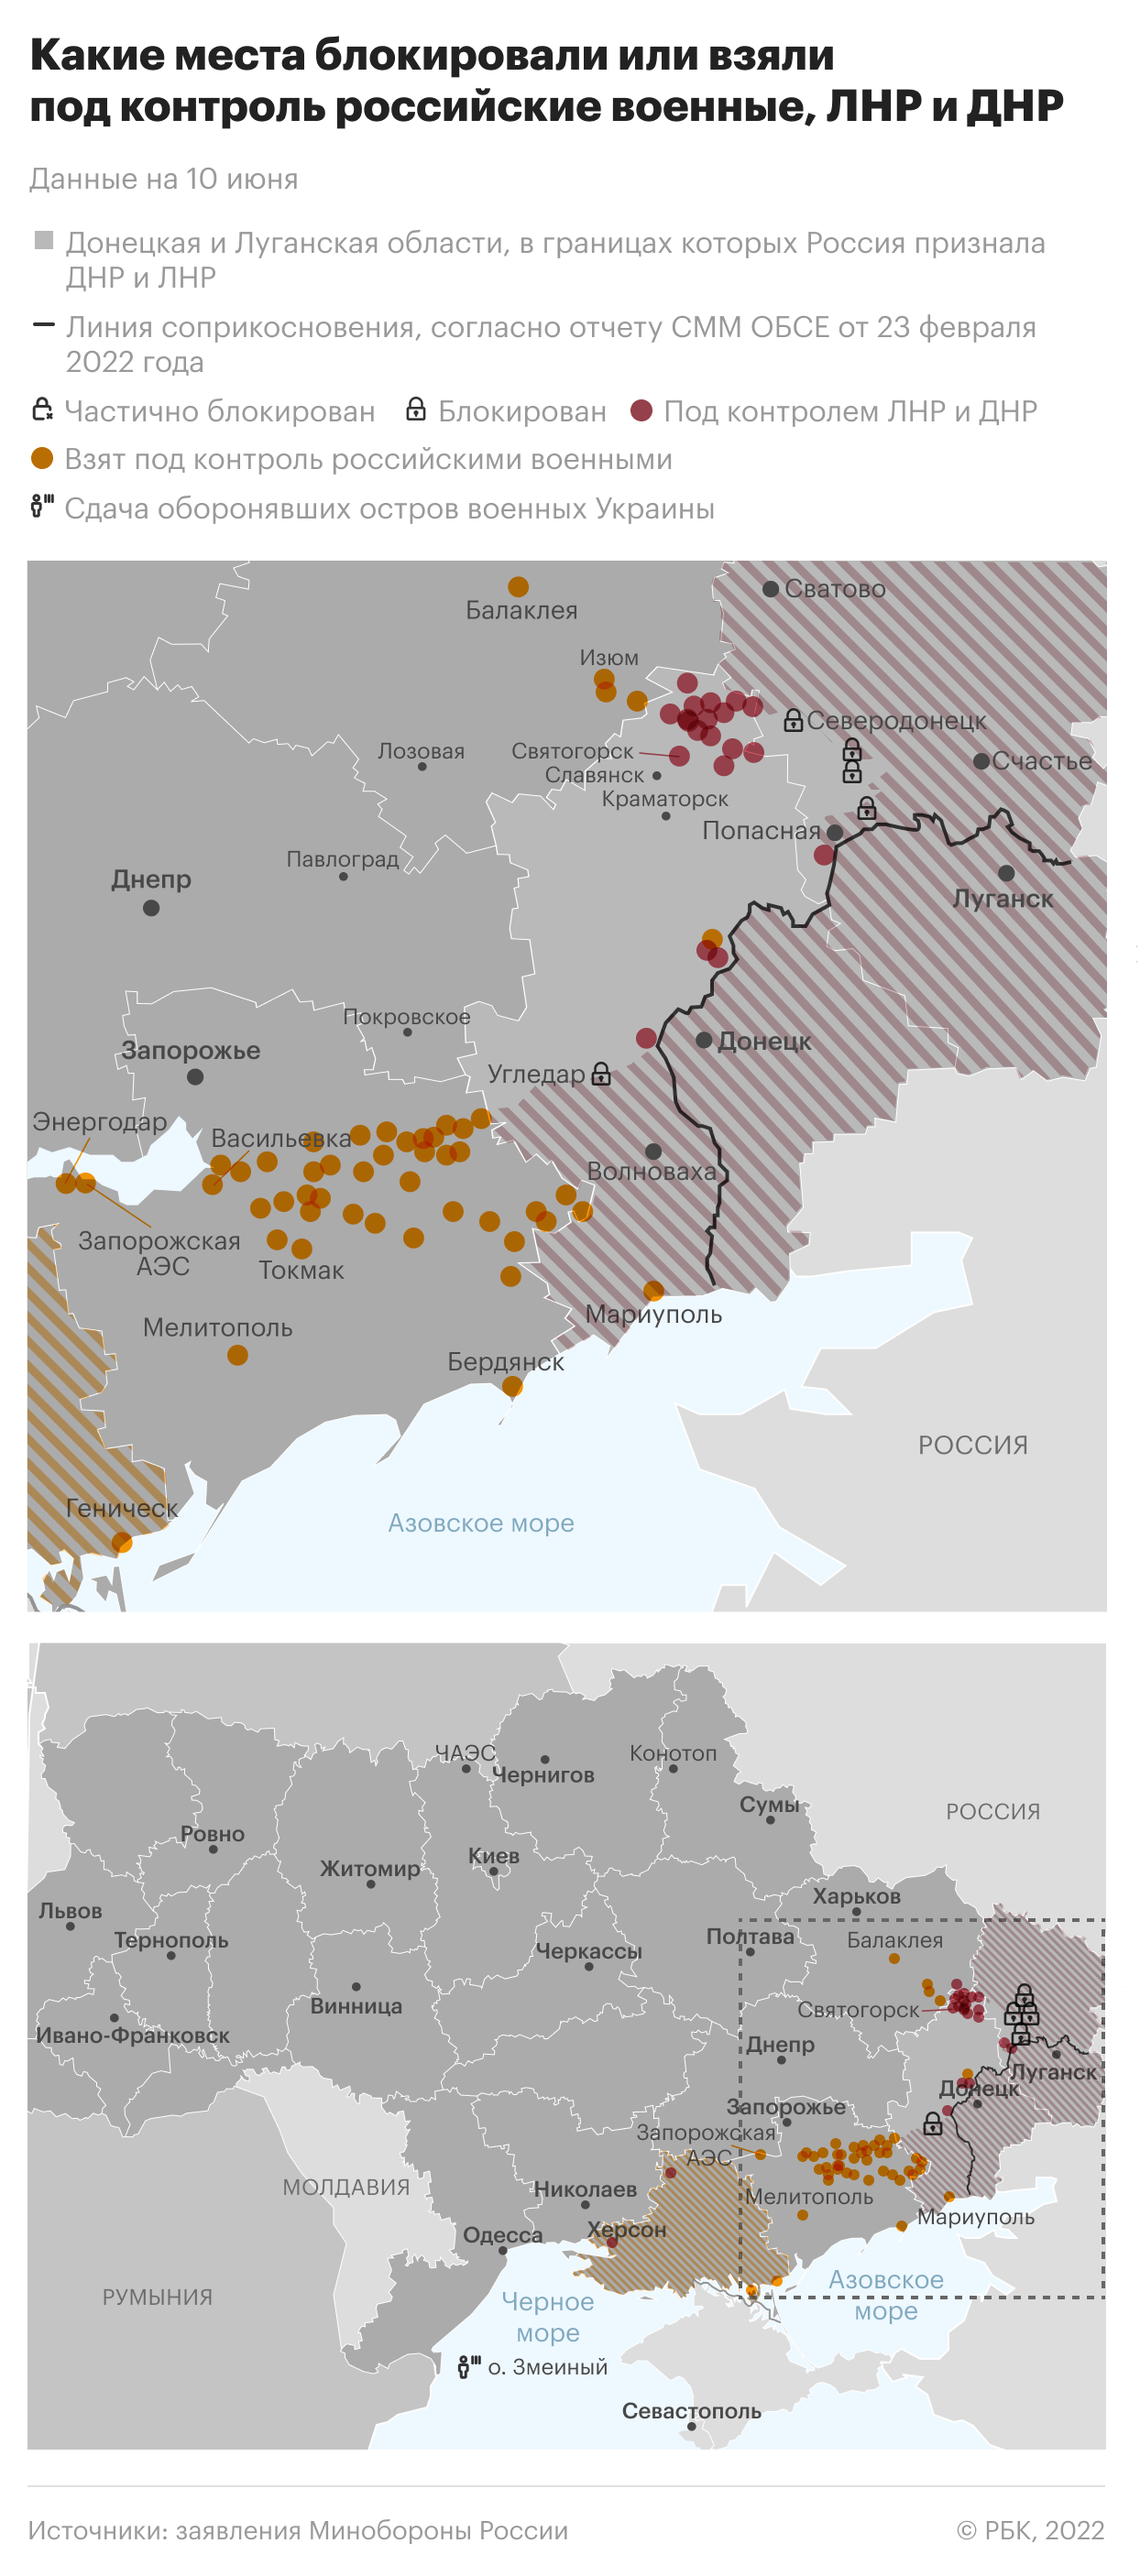 Минобороны сообщило о сбитых украинских МиГ-29 и Су-25"/>













